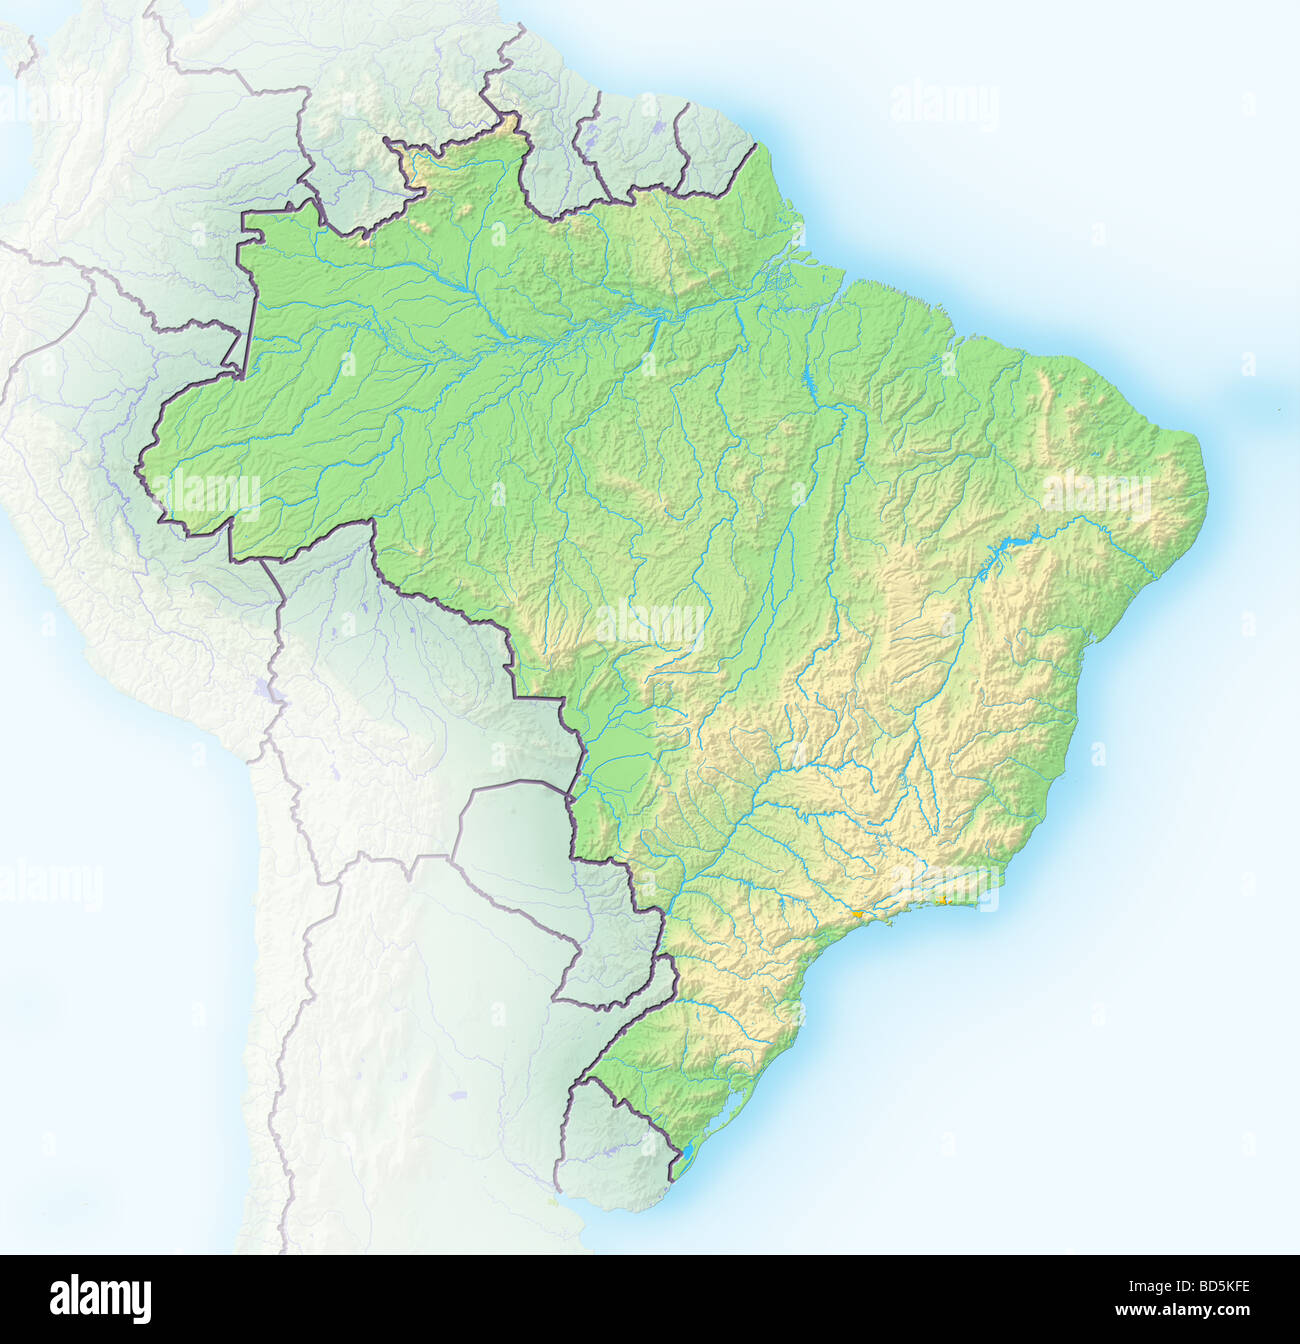 Brasile mappa immagini e fotografie stock ad alta risoluzione - Alamy